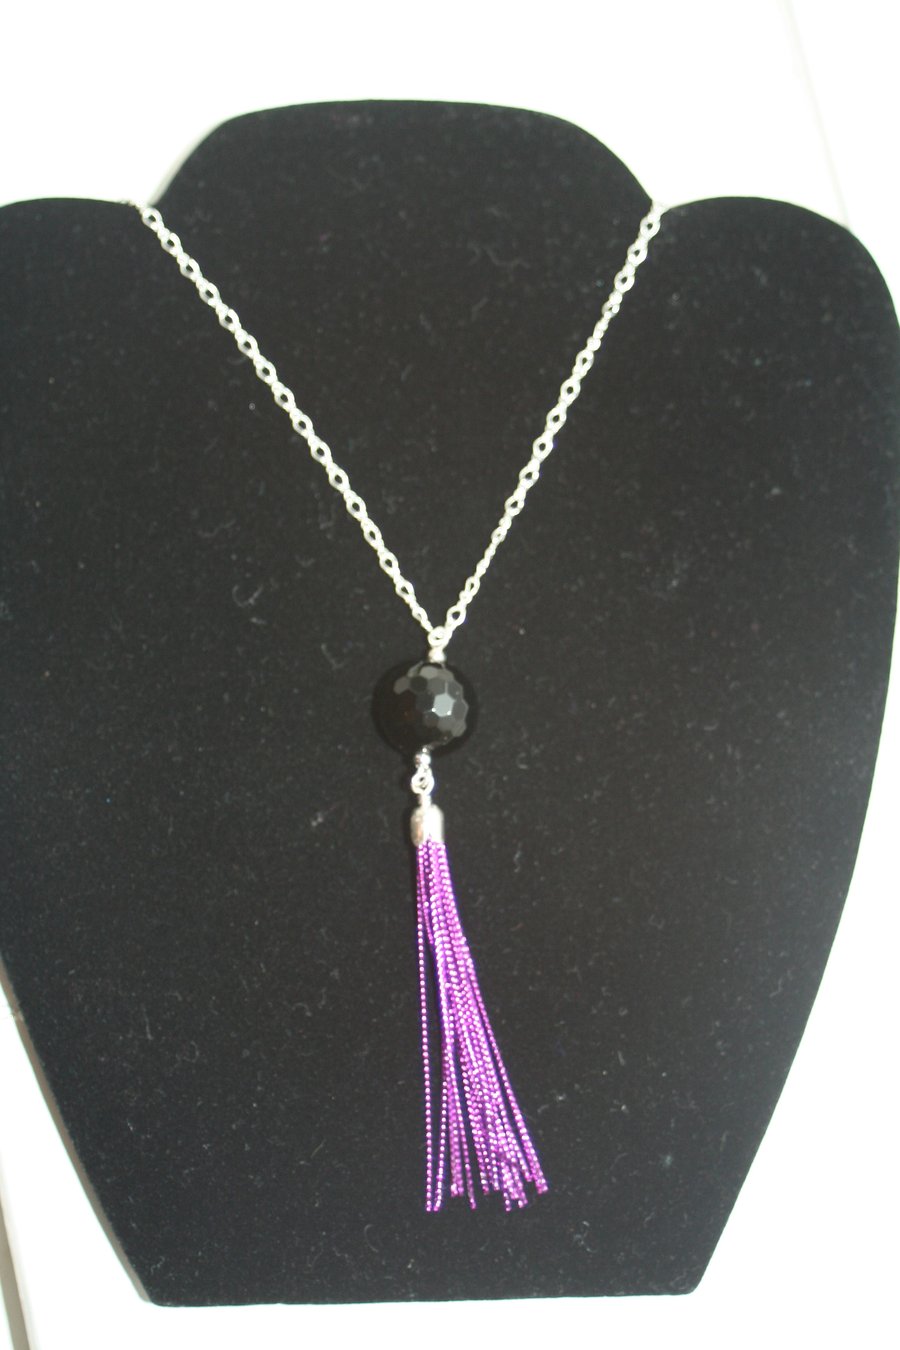 Long tasseled black onyx necklace